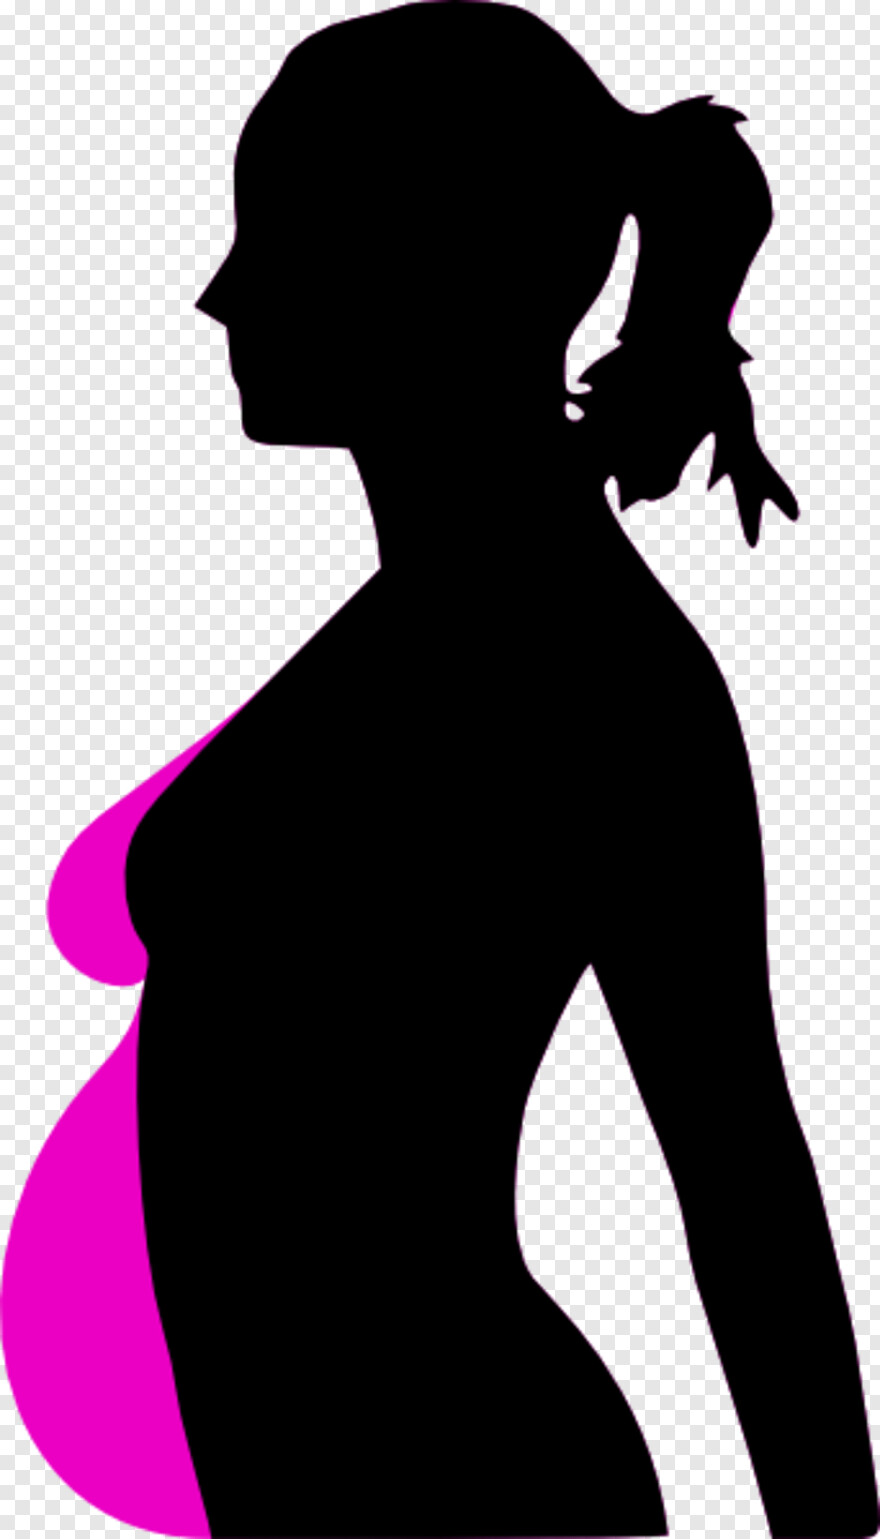 pregnant-silhouette # 645003